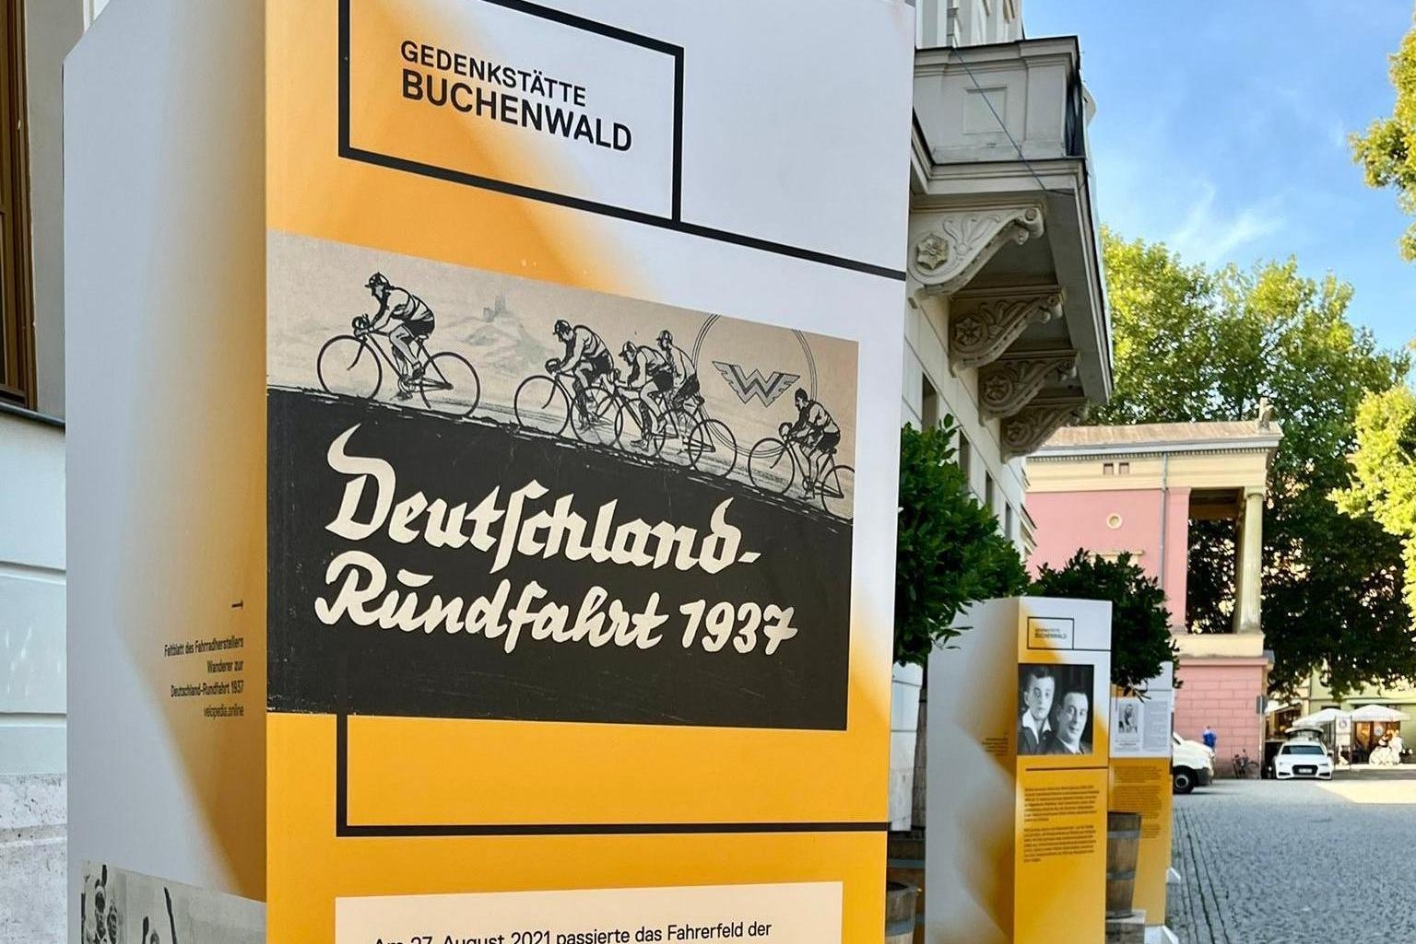 Eine weiß-orangene Infostele der Gedenkstätte Buchenwald, auf der ein Schild der "Deutschlandrundfahrt 1937" abgebildet ist. Darunter wird erklärender Text angeboten.